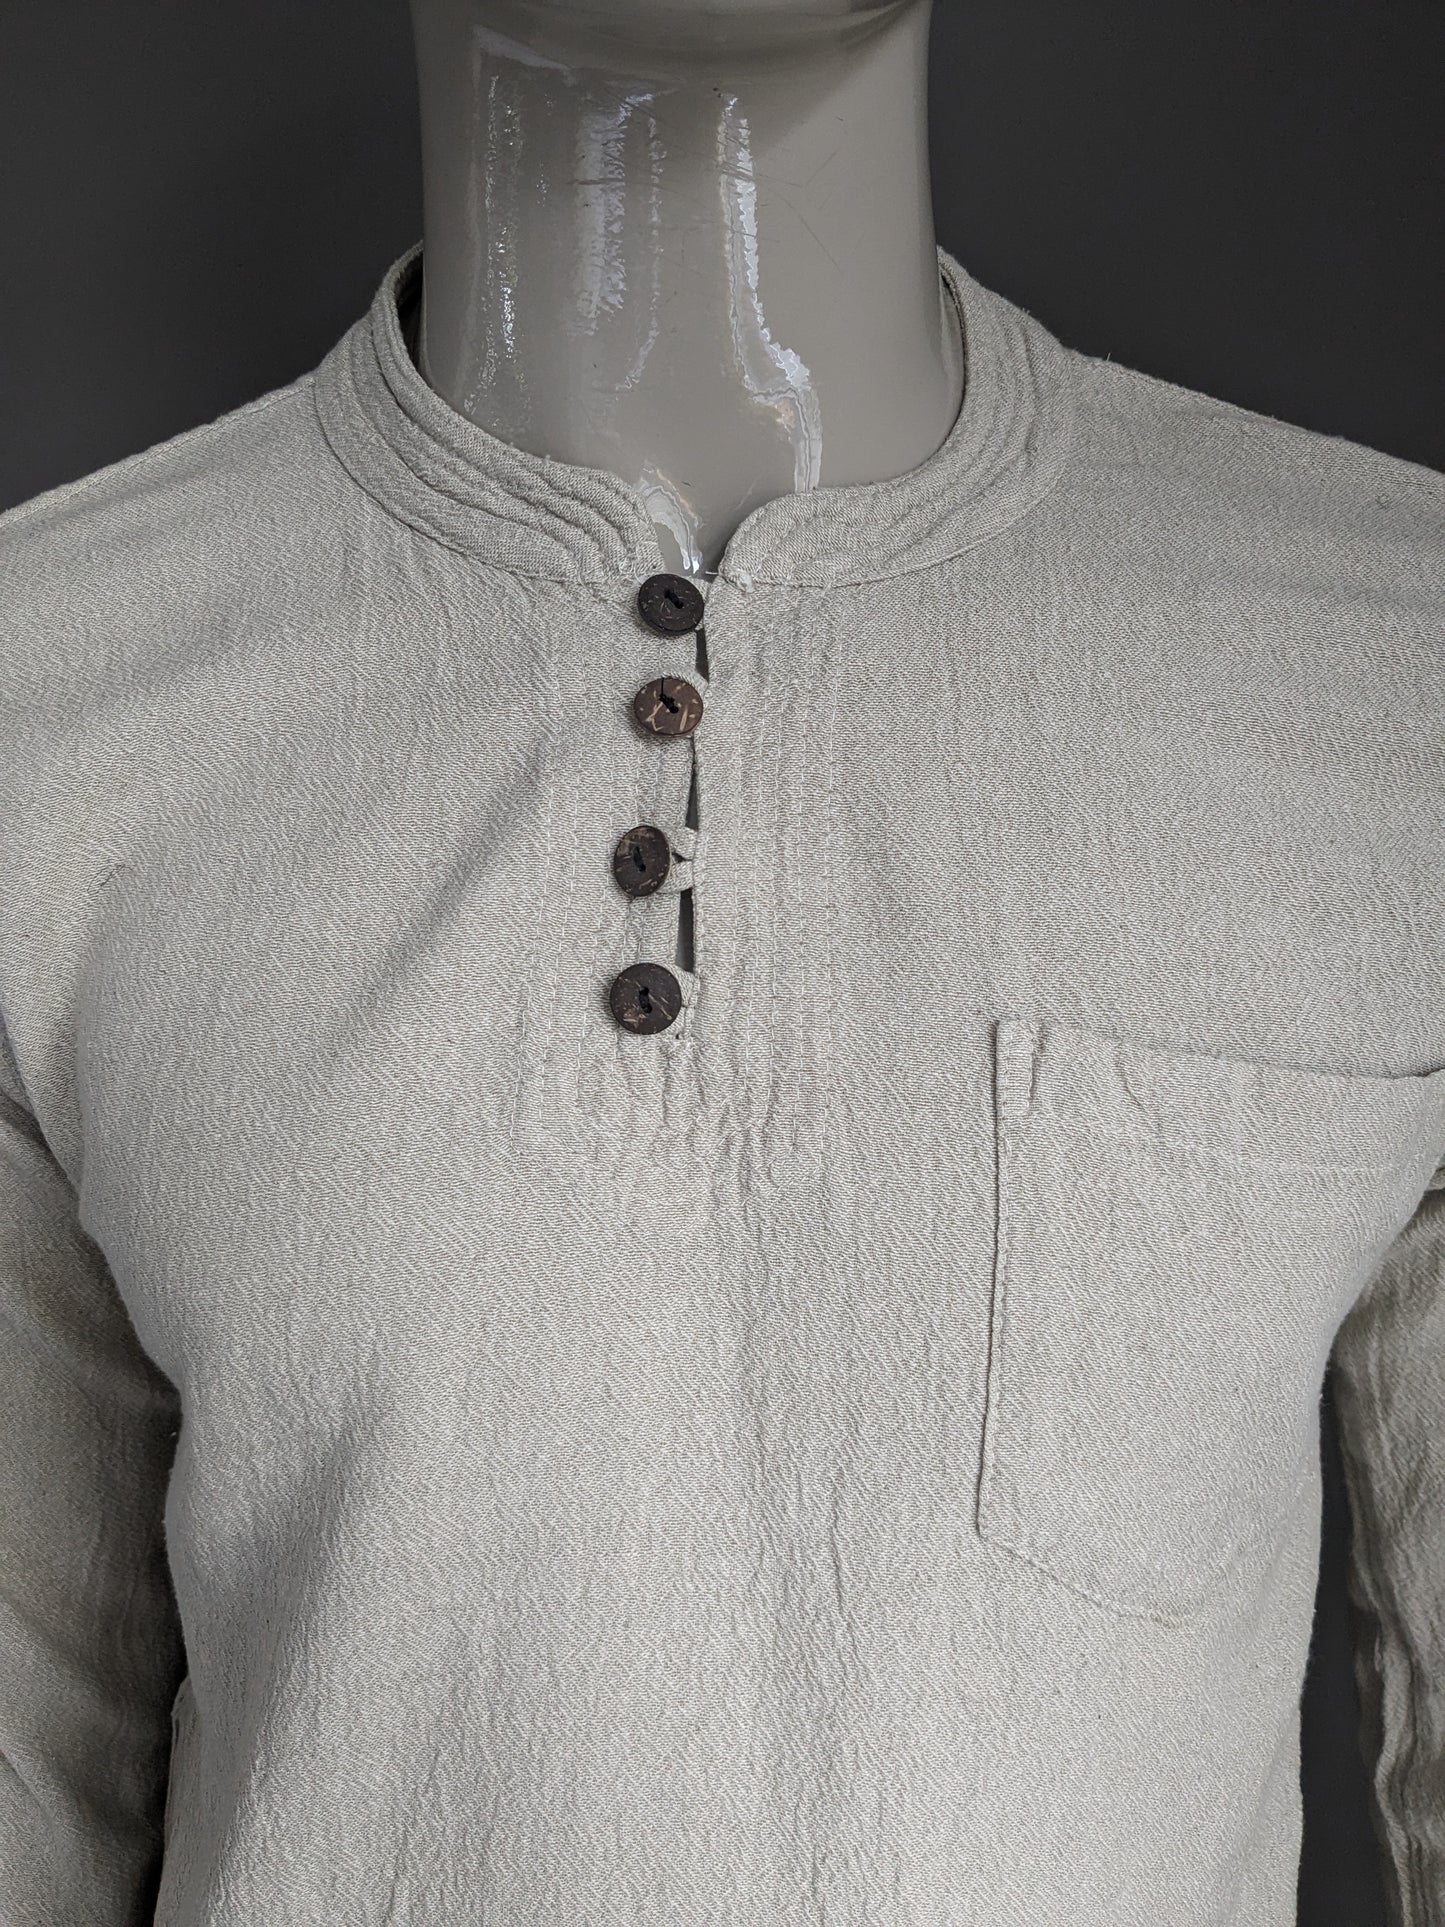 Chemise de chemise Guru vintage avec mao / agriculteurs et col levé avec 1 sac. Motif beige. Taille M.